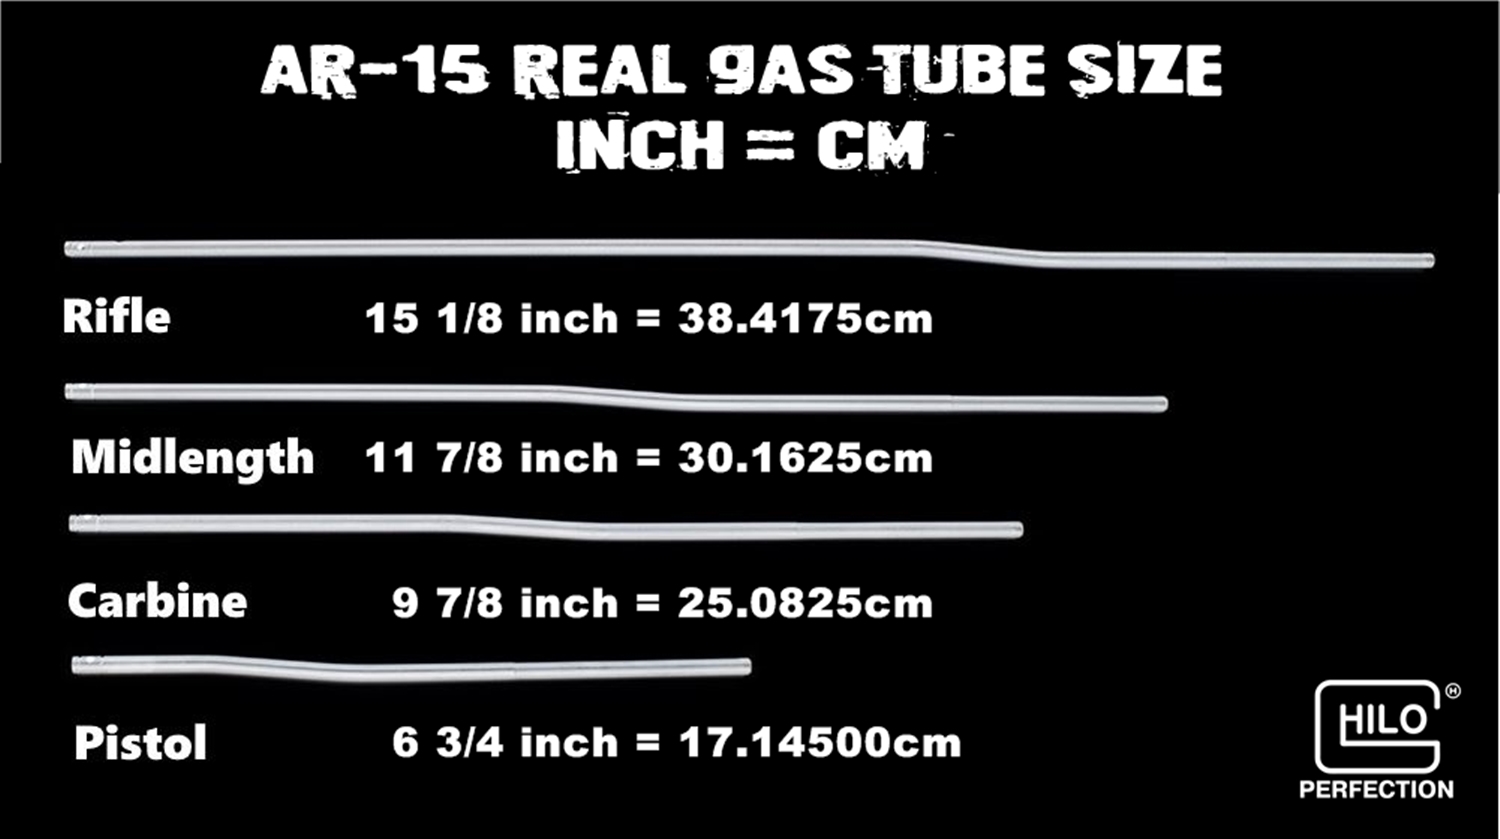 3 実物 & リアルレプリカ AR15 ガスチューブの違いを検証!! AR15 DPMS Real vs SP Type Gas Tube Verify Validate!! M4 N4 トレポン MWS 次世代 電動ガン 比較 レビュー!!